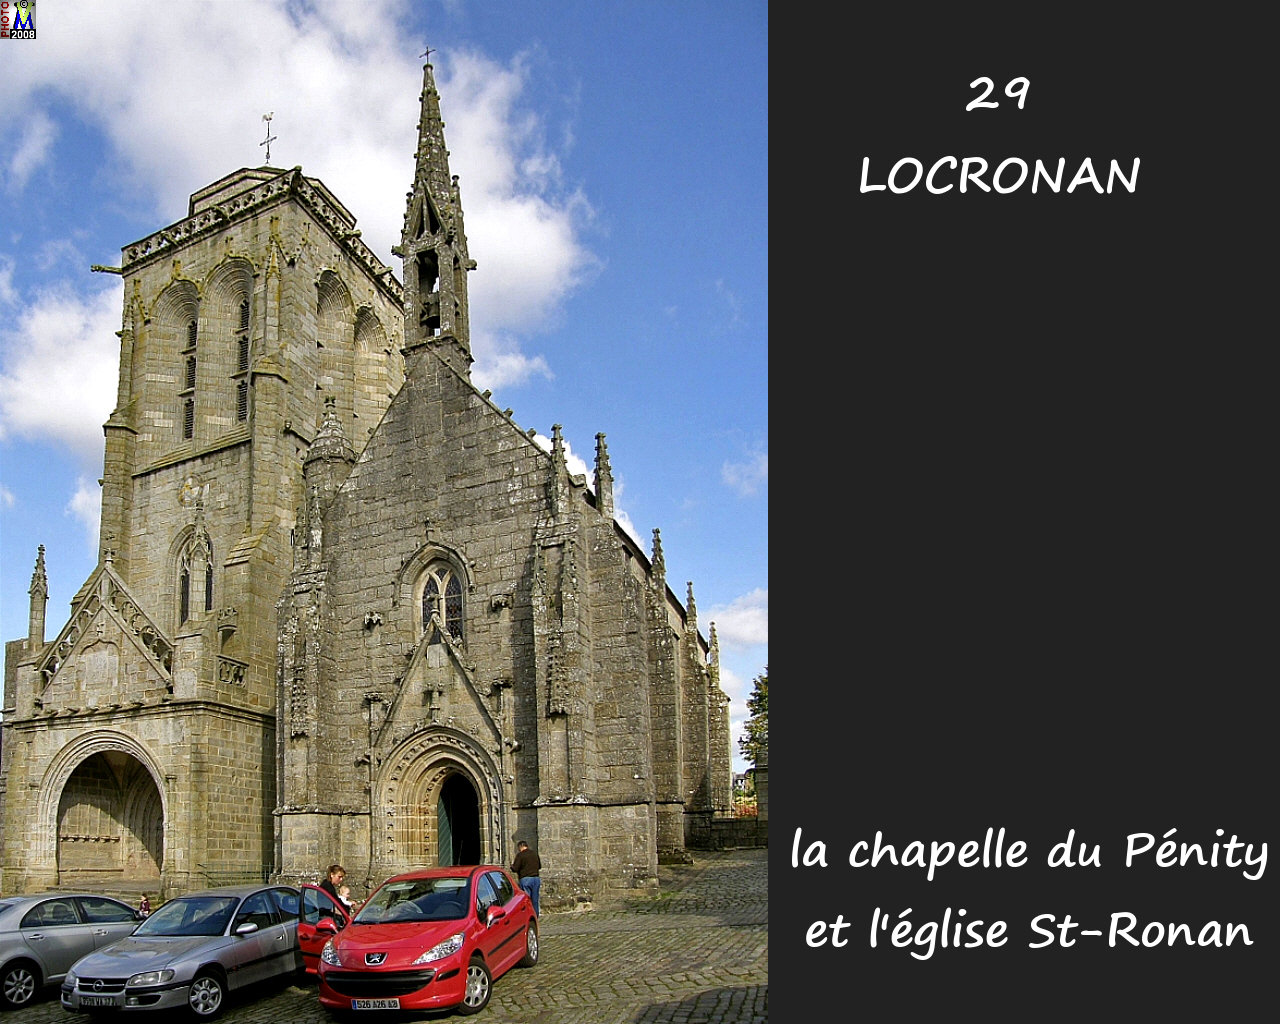 29LOCRONAN_chapelle_100.jpg